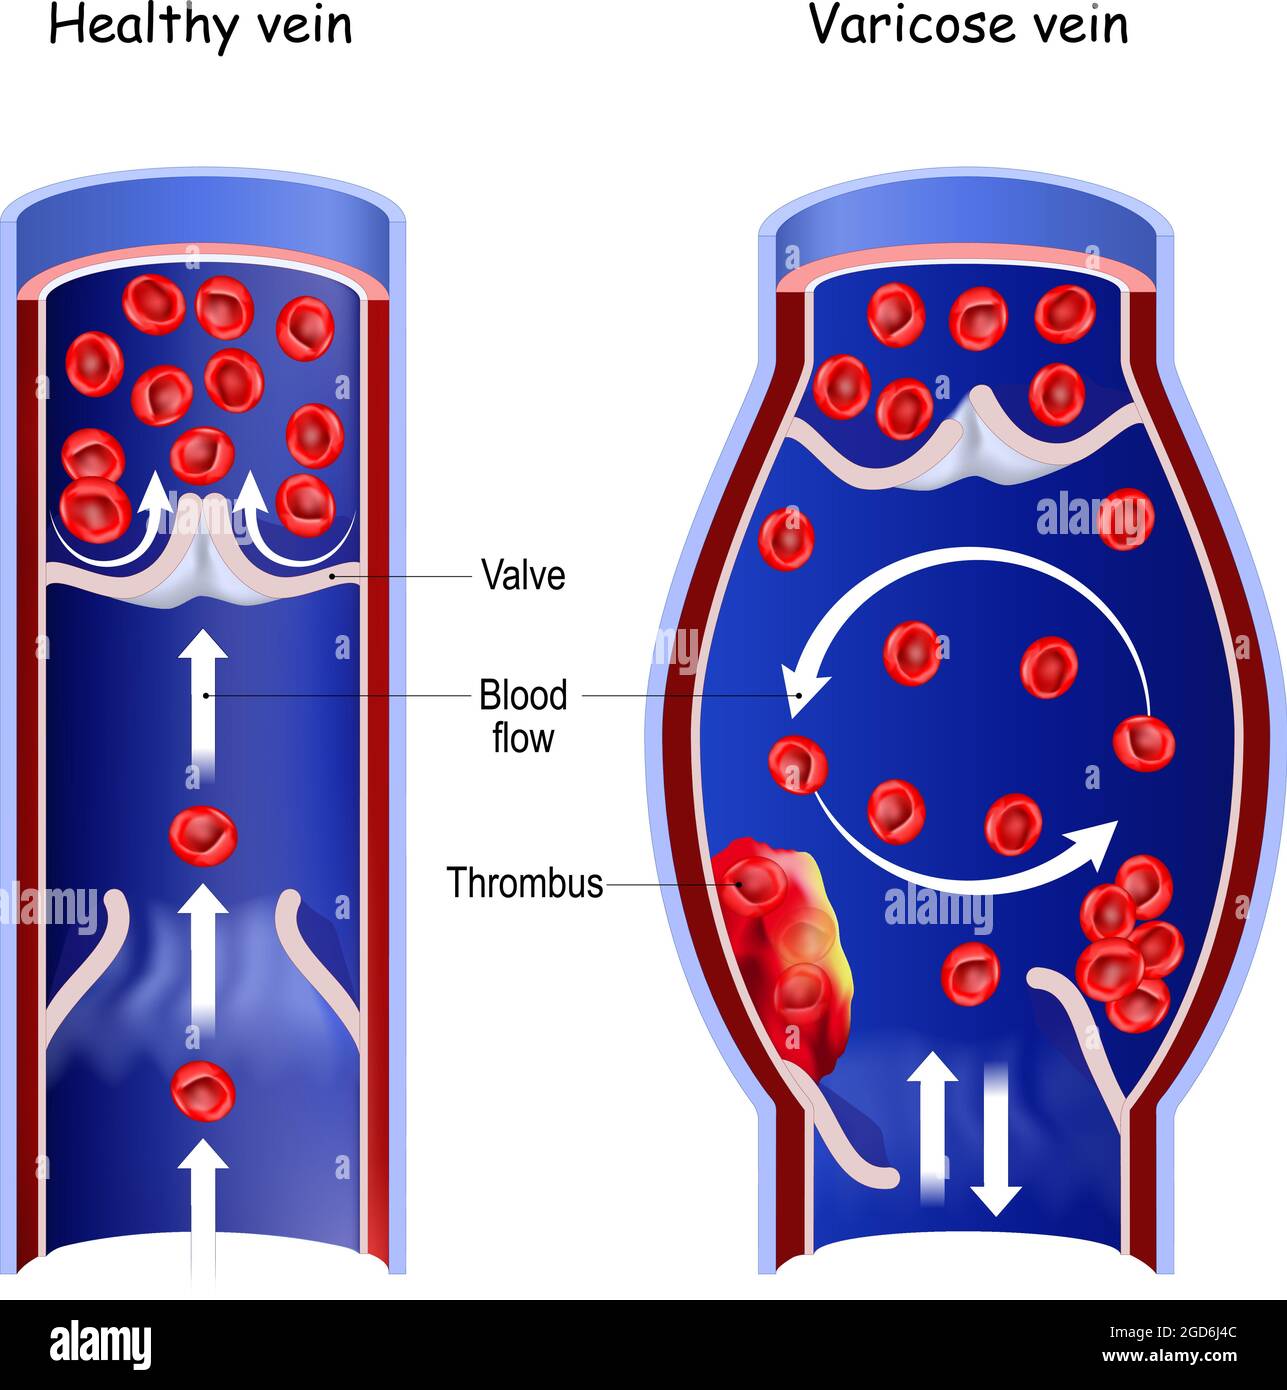 Vena sana y vena varicosa. Sección transversal de vasos sanguíneos normales y trombo en el flujo sanguíneo. Ilustración de vectores Ilustración del Vector